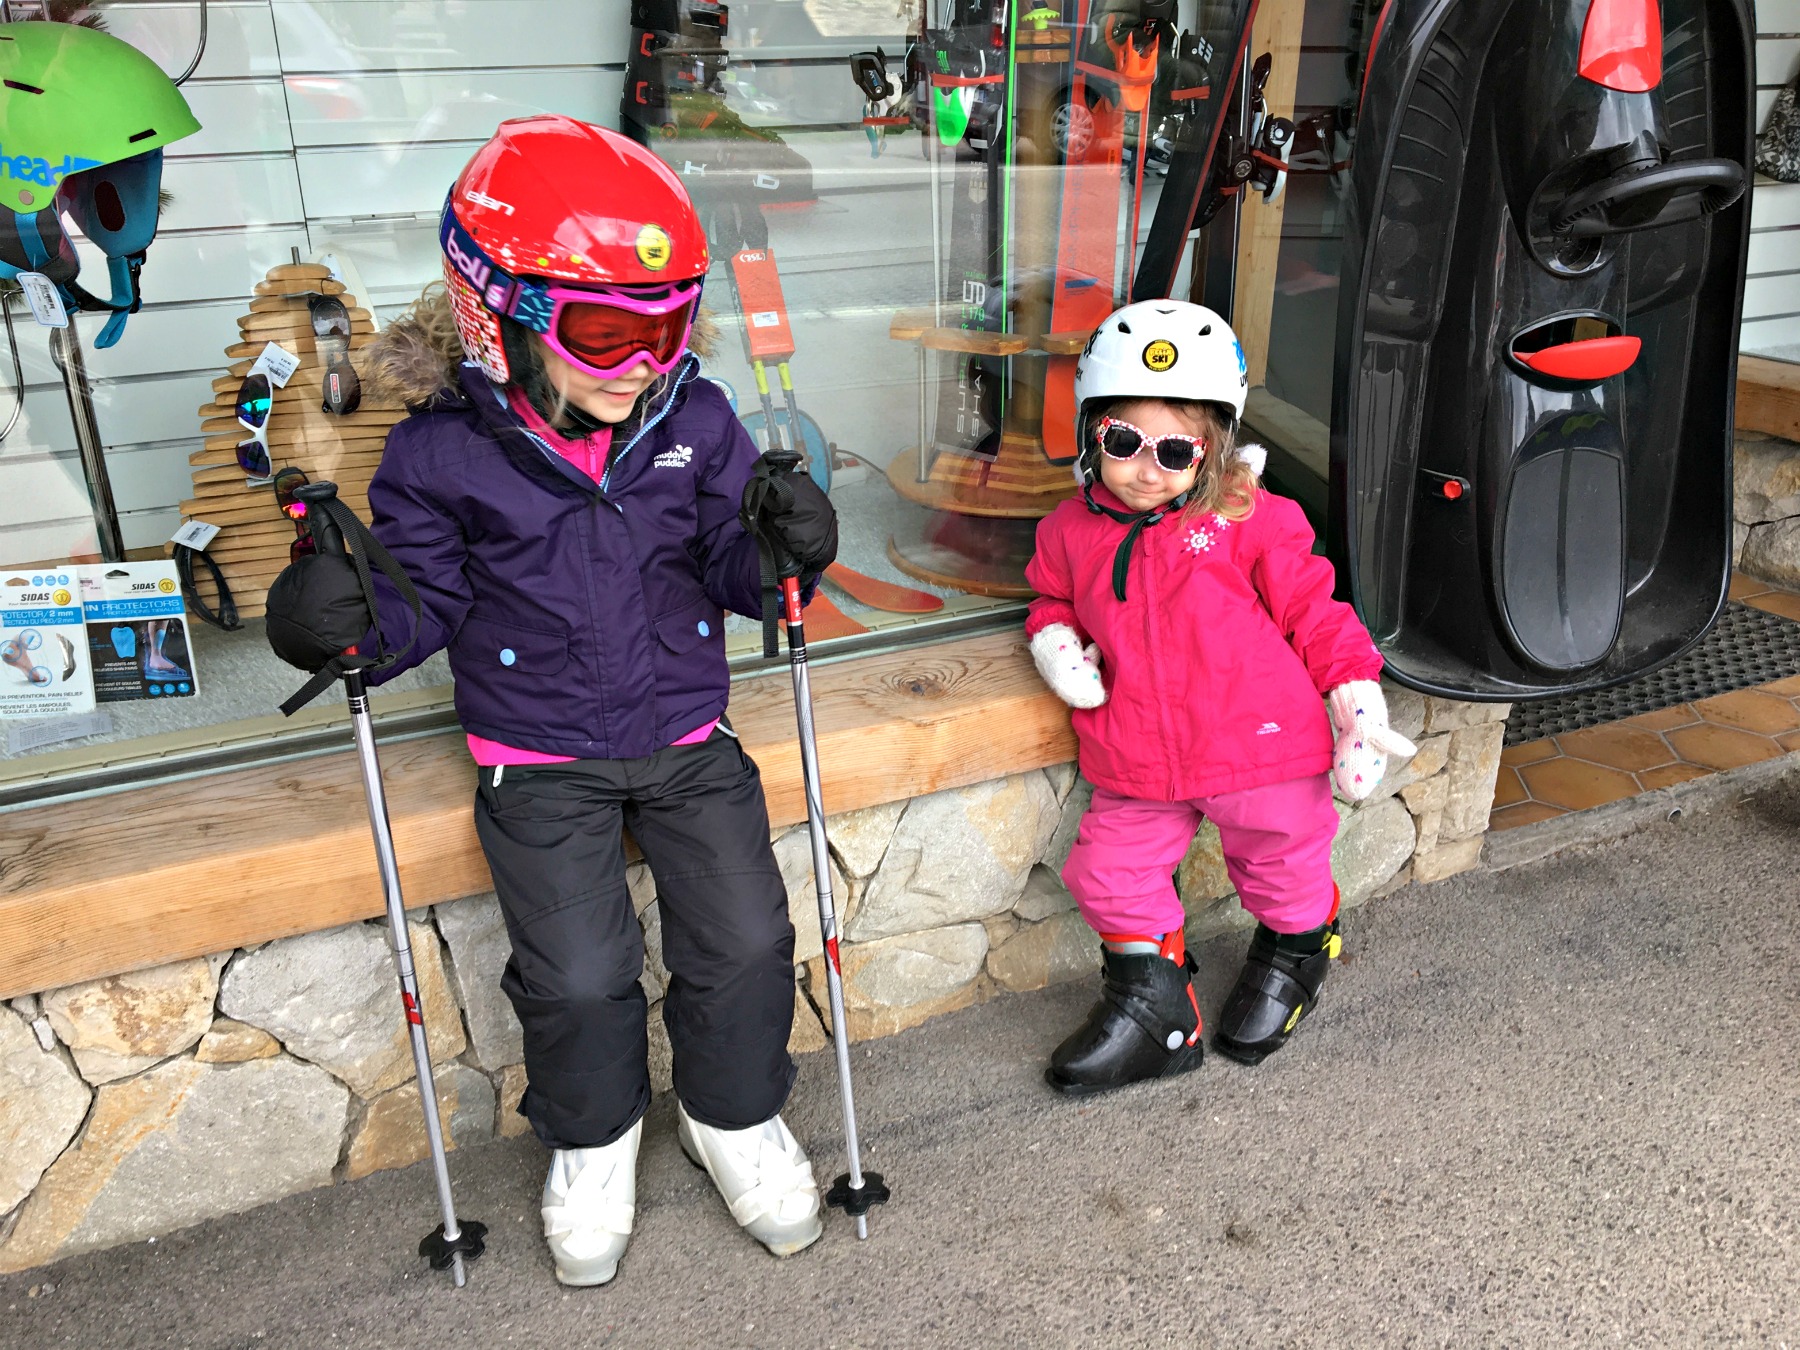 Two children in ski clothing having hiring ski equipment for a family ski holiday